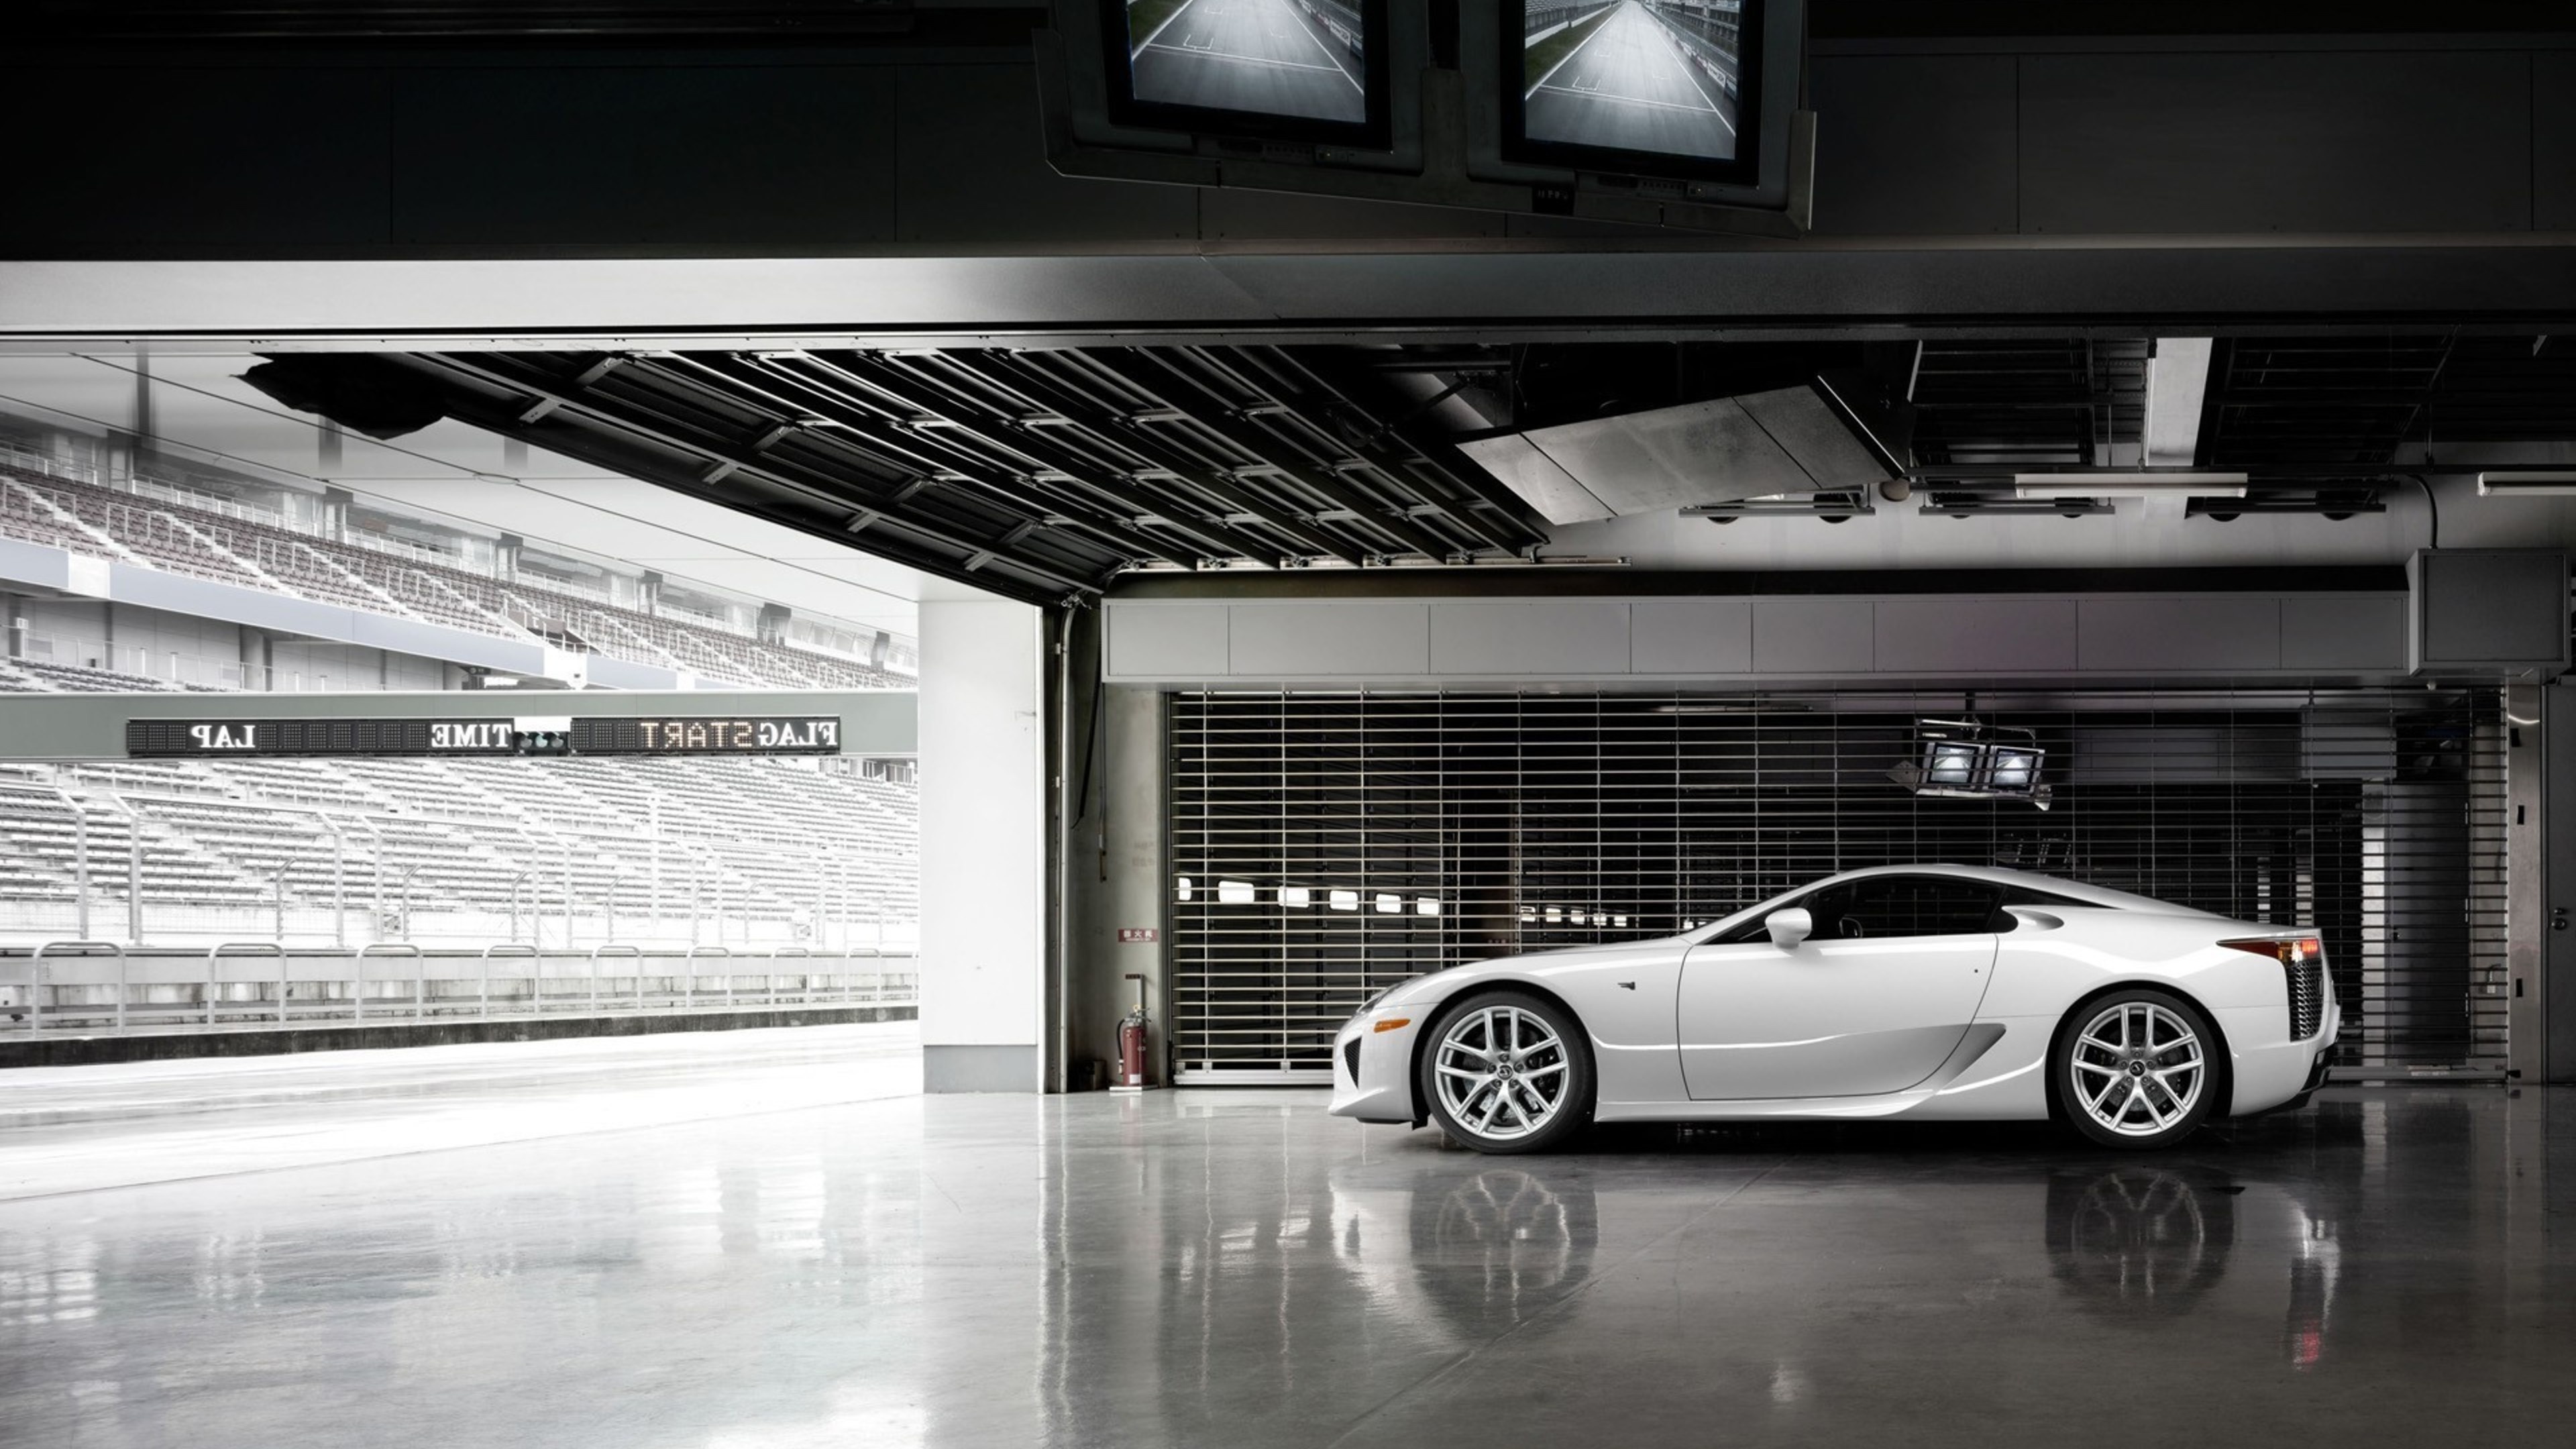 Lexus LFA, HD wallpapers, Luxury sports car, Picturesque beauty, 3840x2160 4K Desktop